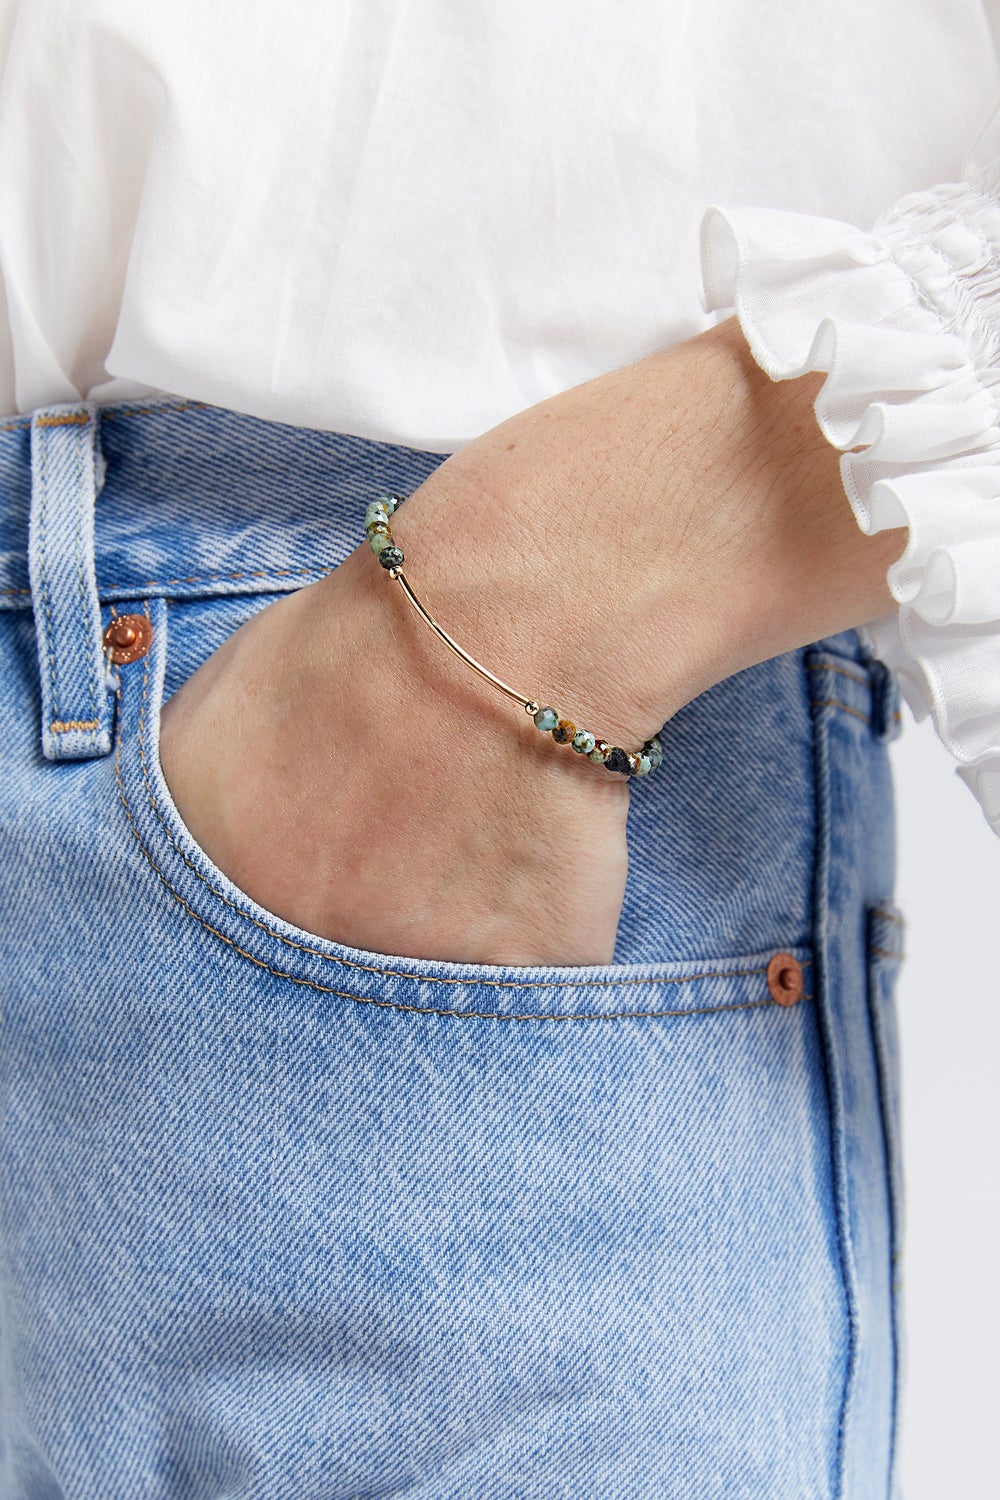 Vania Turquoise Bracelet